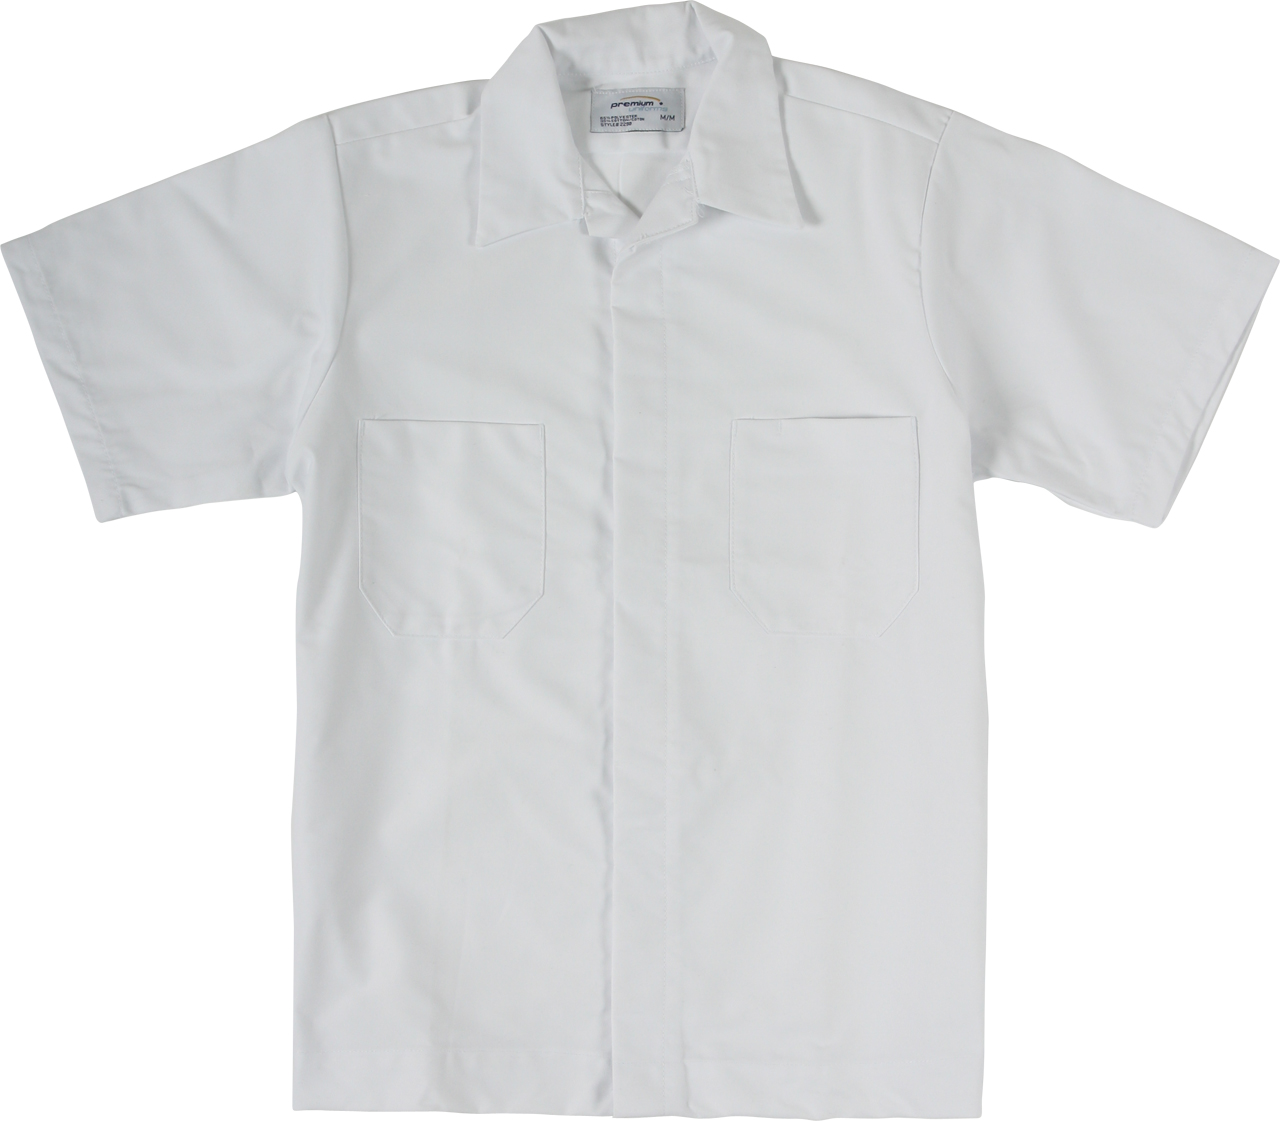 Picture of Premium Uniforms Short Sleeve Automotive Shirt